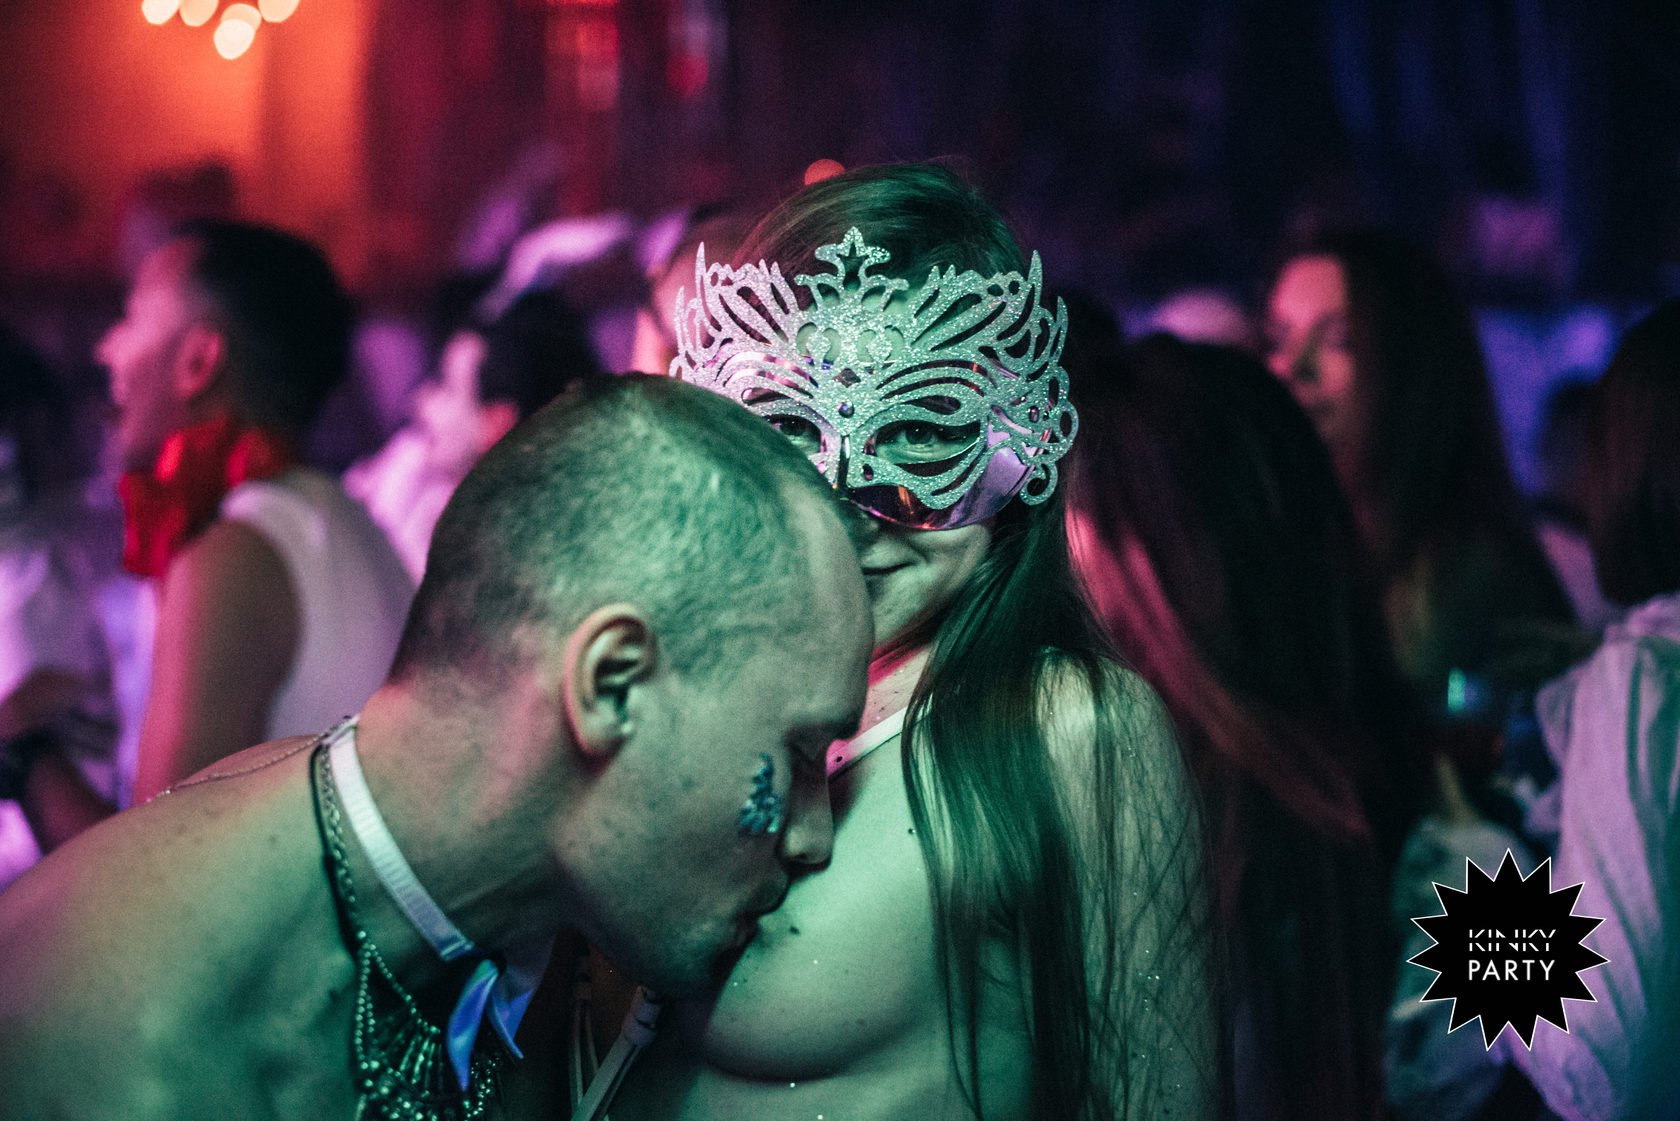 Знакомства для секса в Нижнем Новгороде — объявления на slyclub